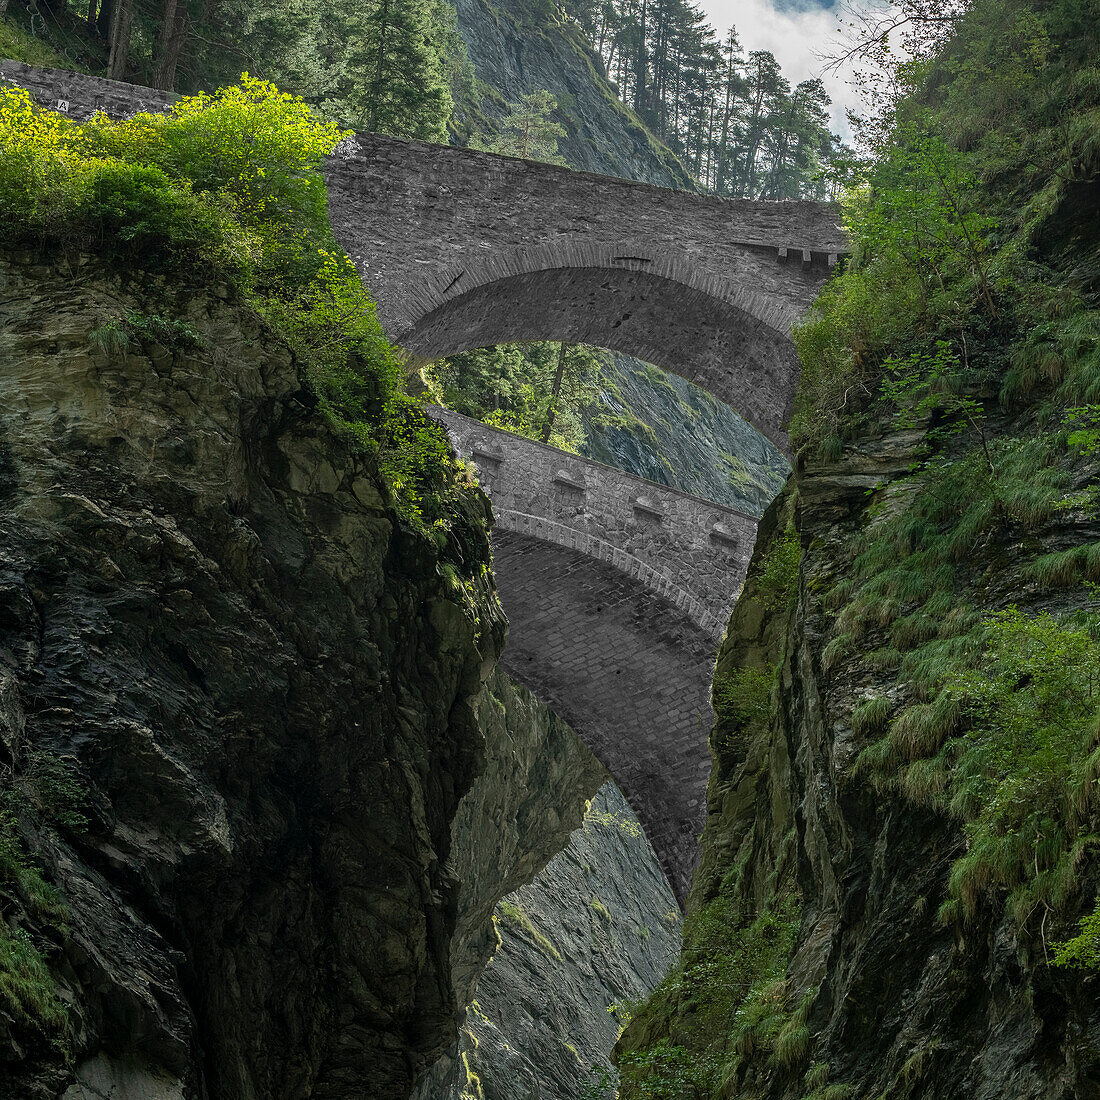  Bridges over the Viamala Gorge, Graubünden, Switzerland 